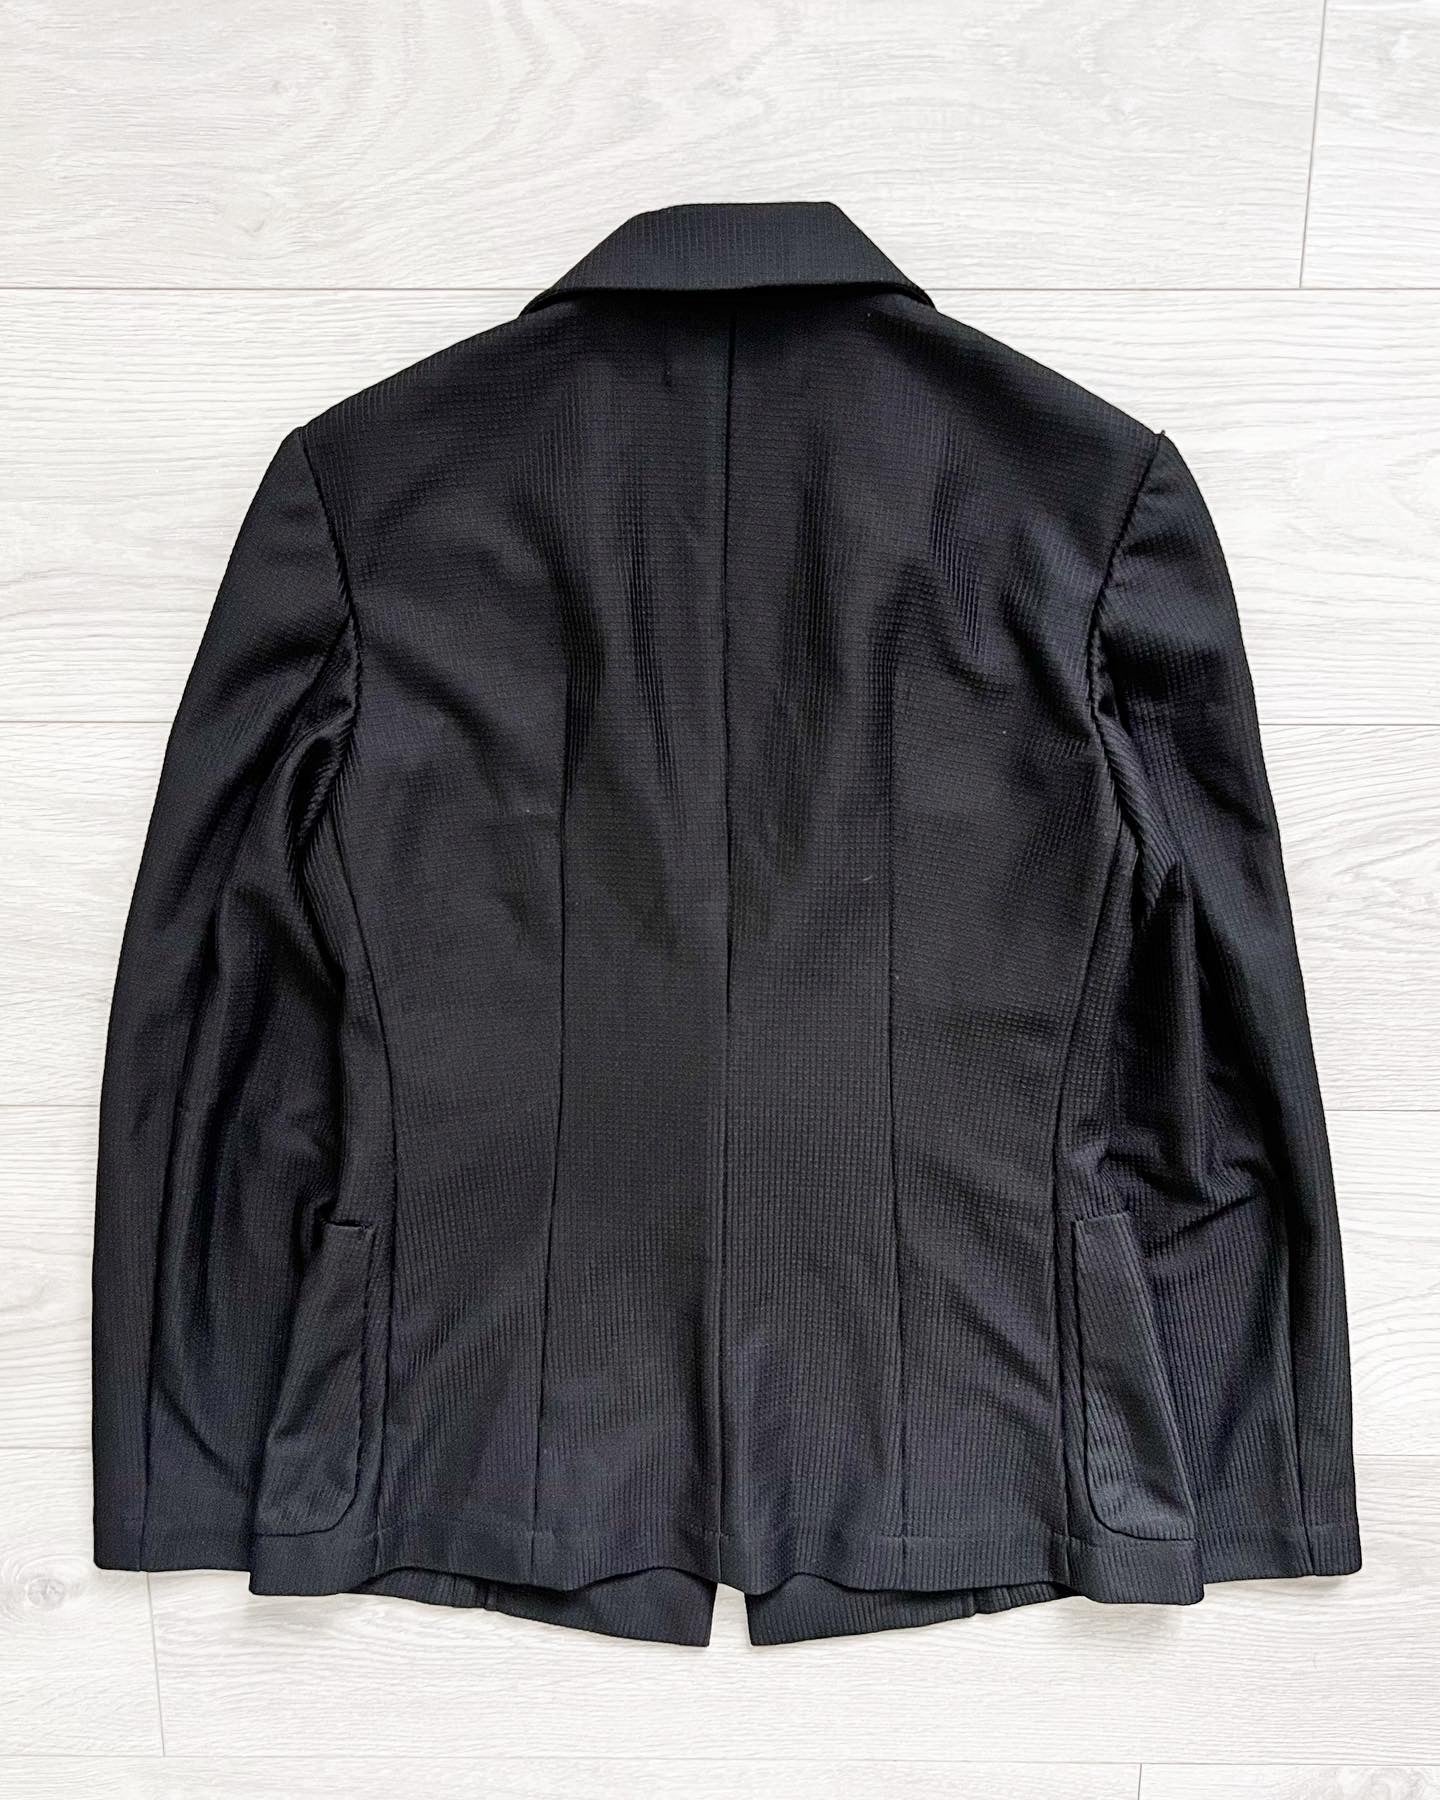 Comme Des Garcons 1997 Mesh Tailored Blazer Jacket - Size Wmns M